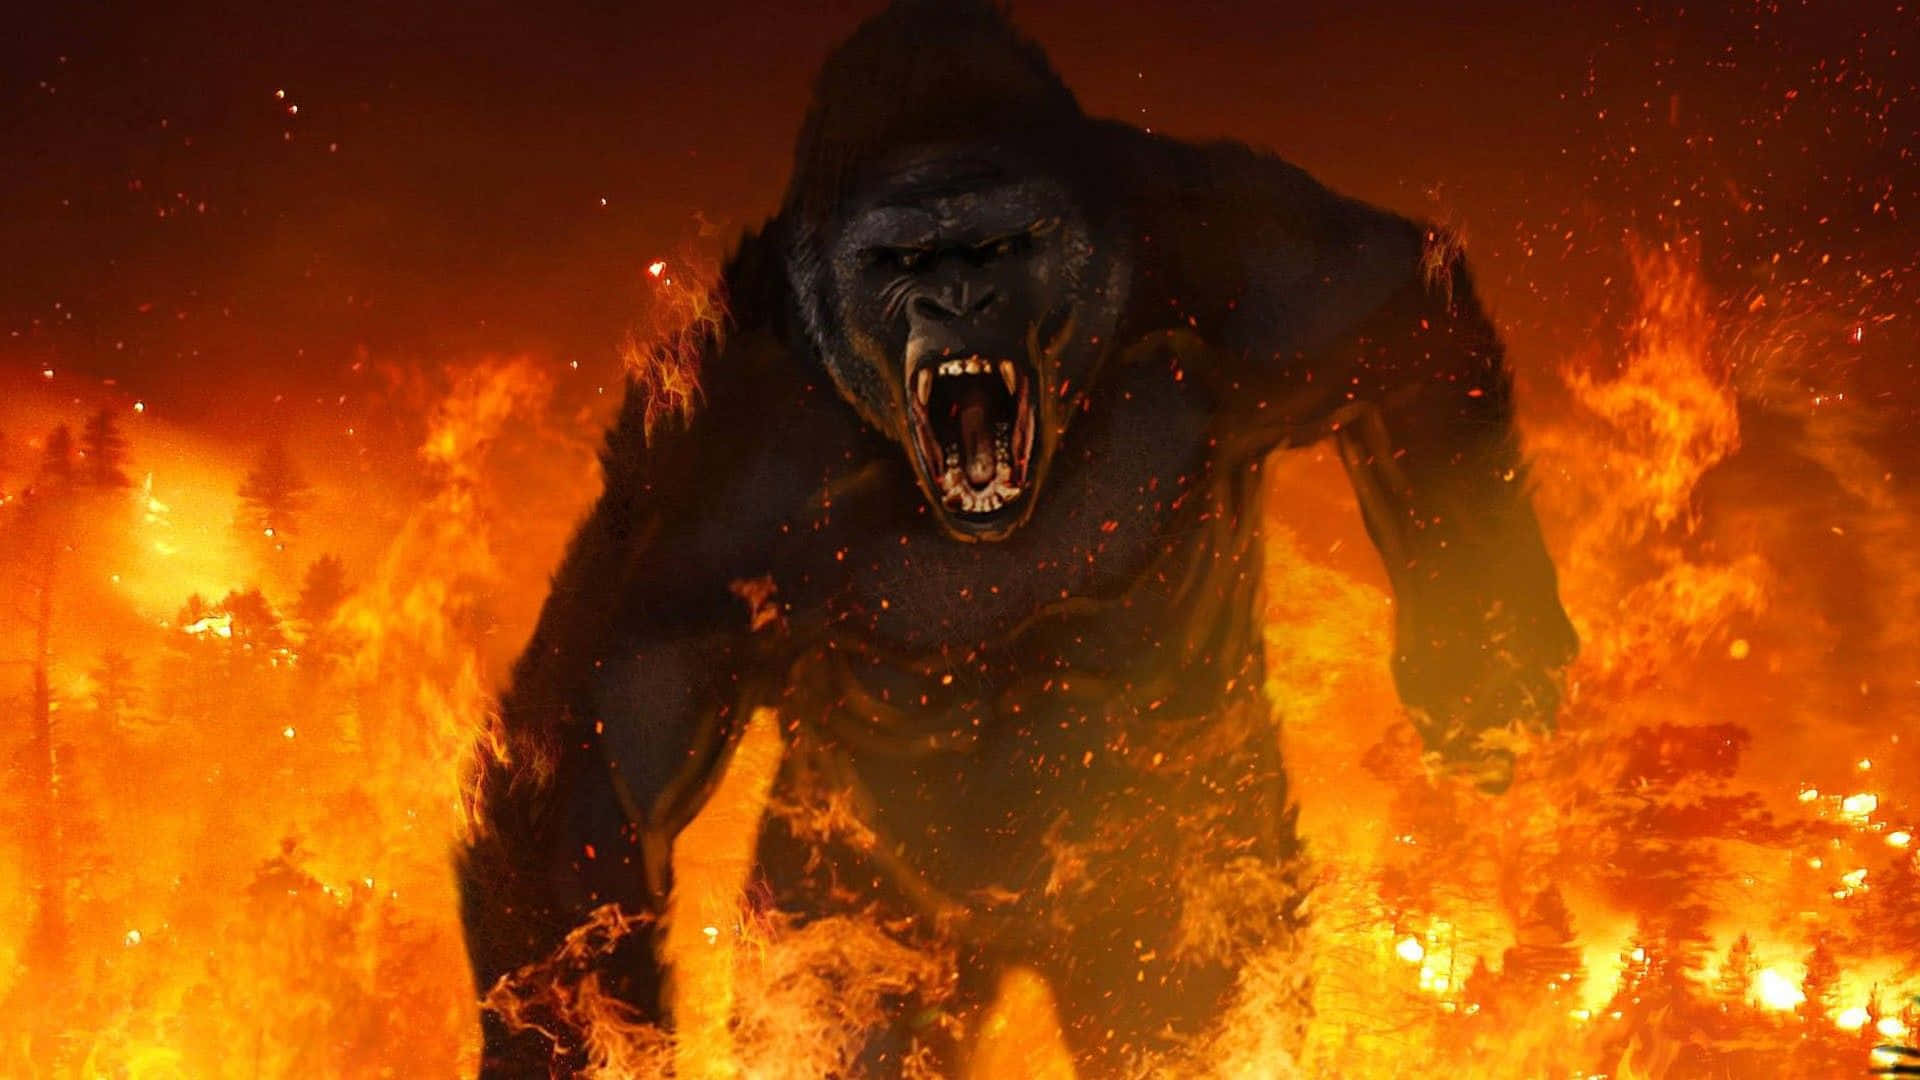 A Gorilla Is Running Through The Fire